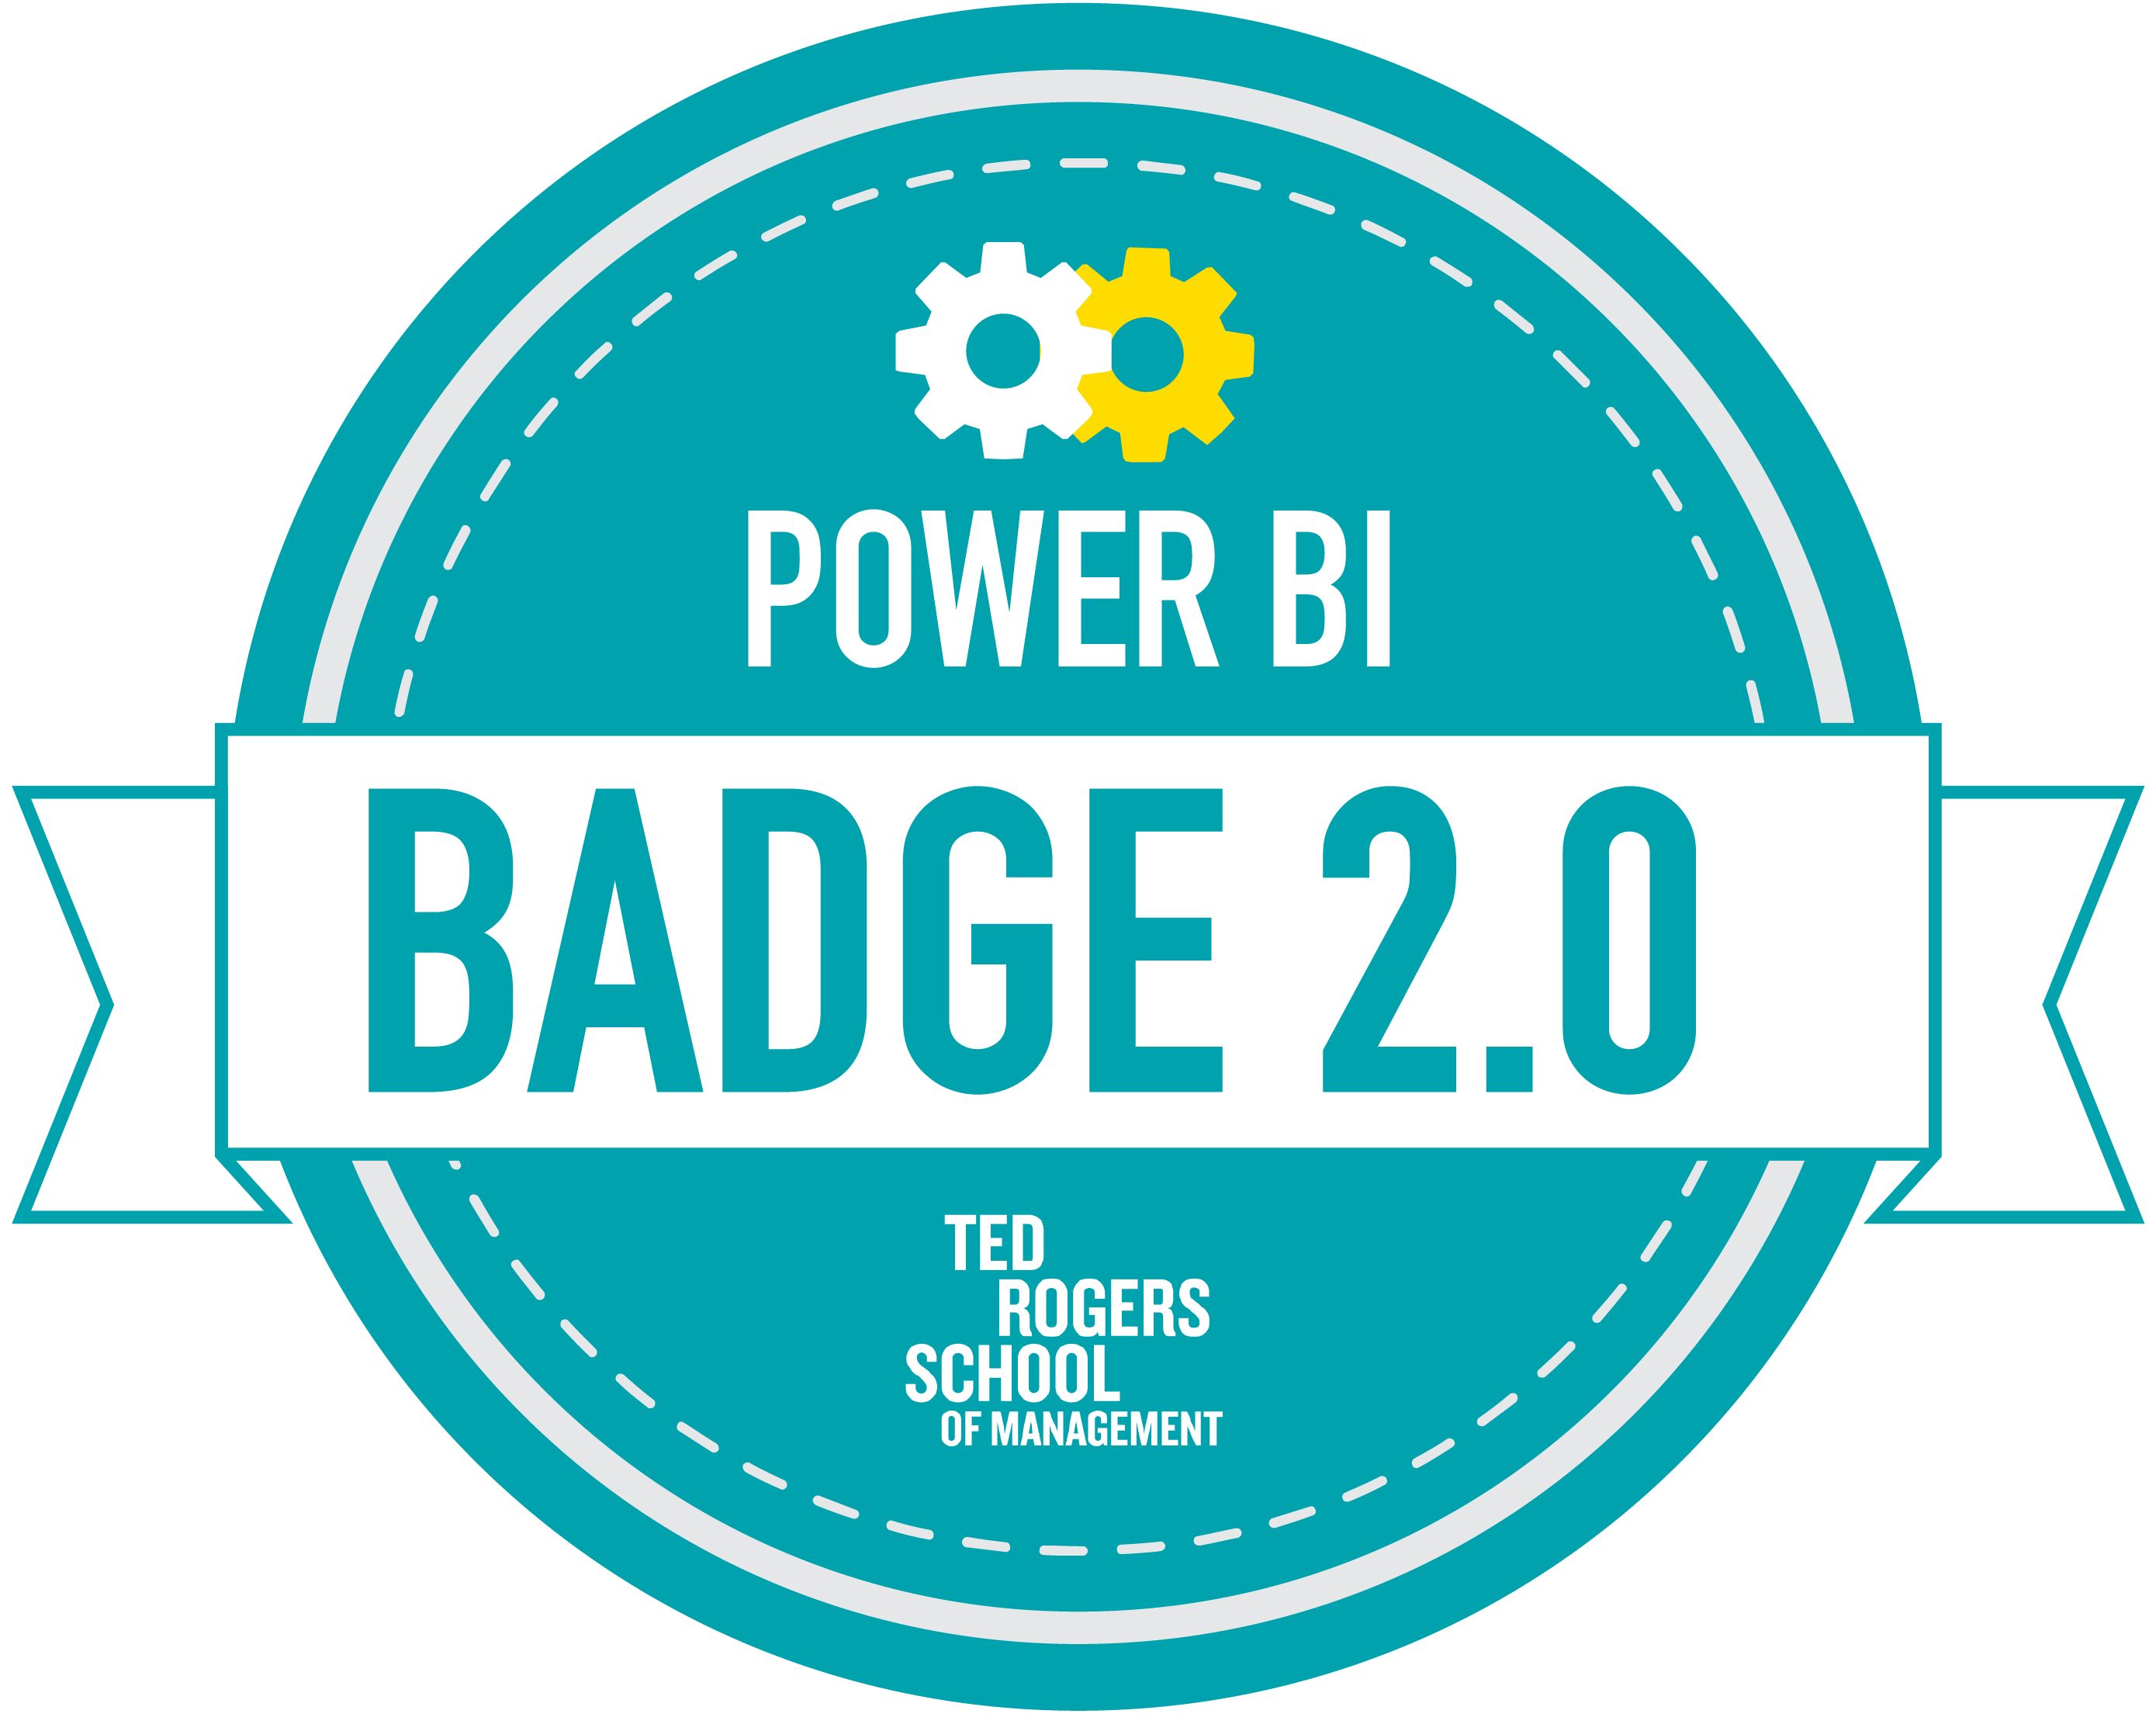 Power BI Badge 2.0